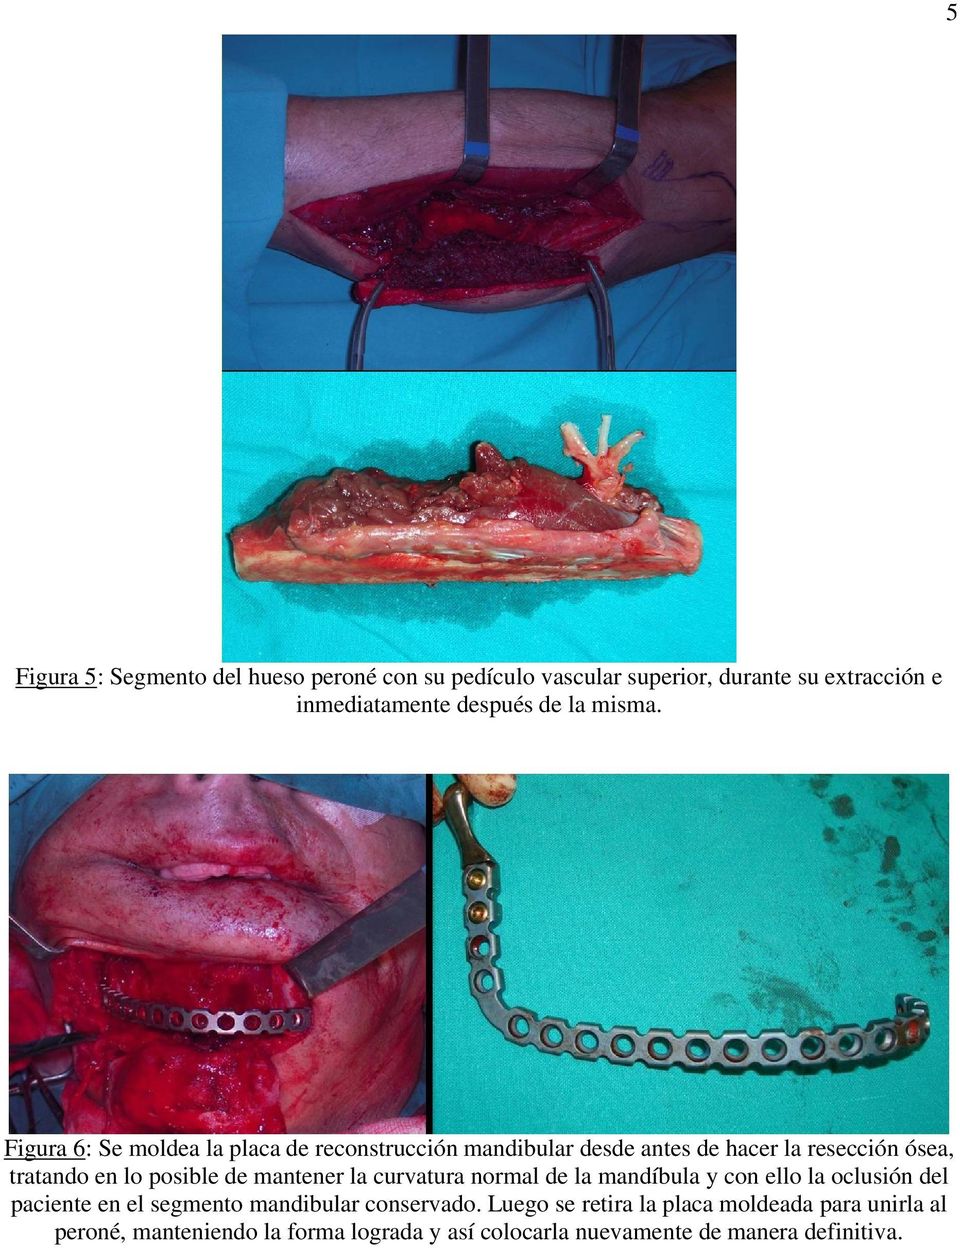 Figura 6: Se moldea la placa de reconstrucción mandibular desde antes de hacer la resección ósea, tratando en lo posible de